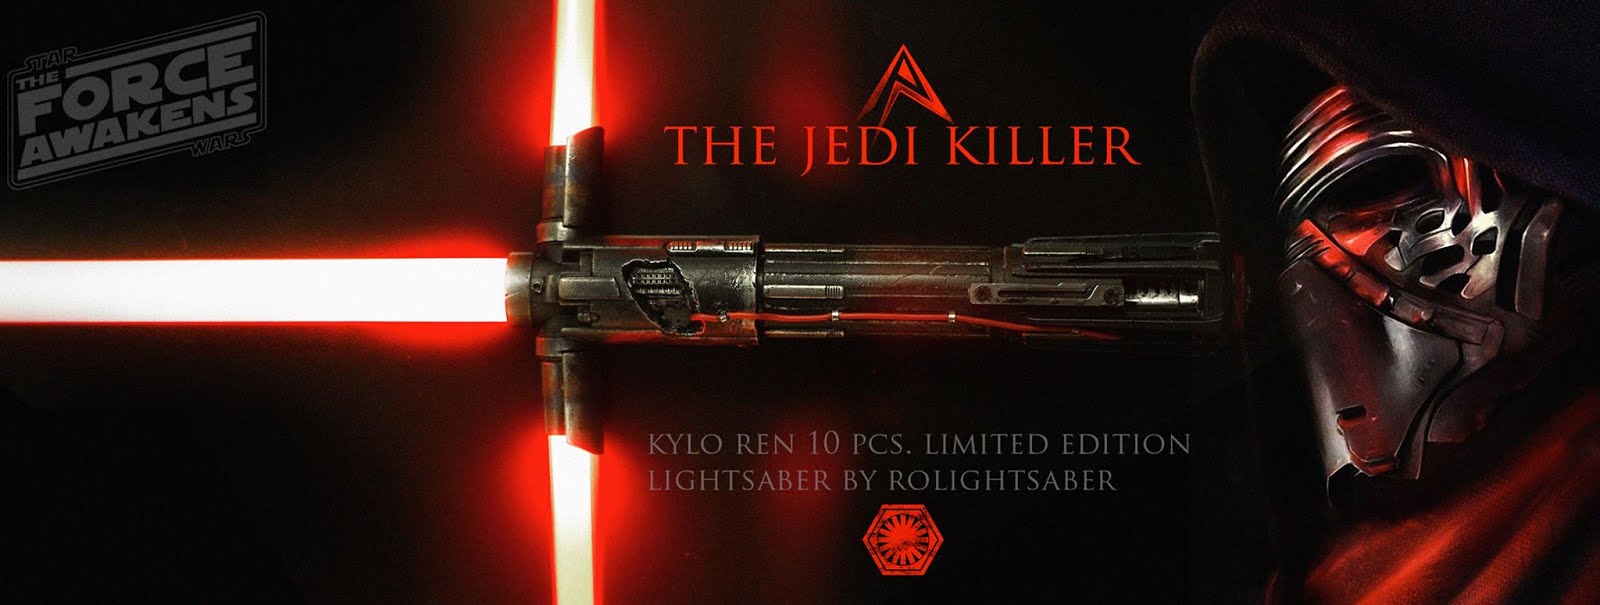 The Jedi Killer Kylo Ren Lightsaber